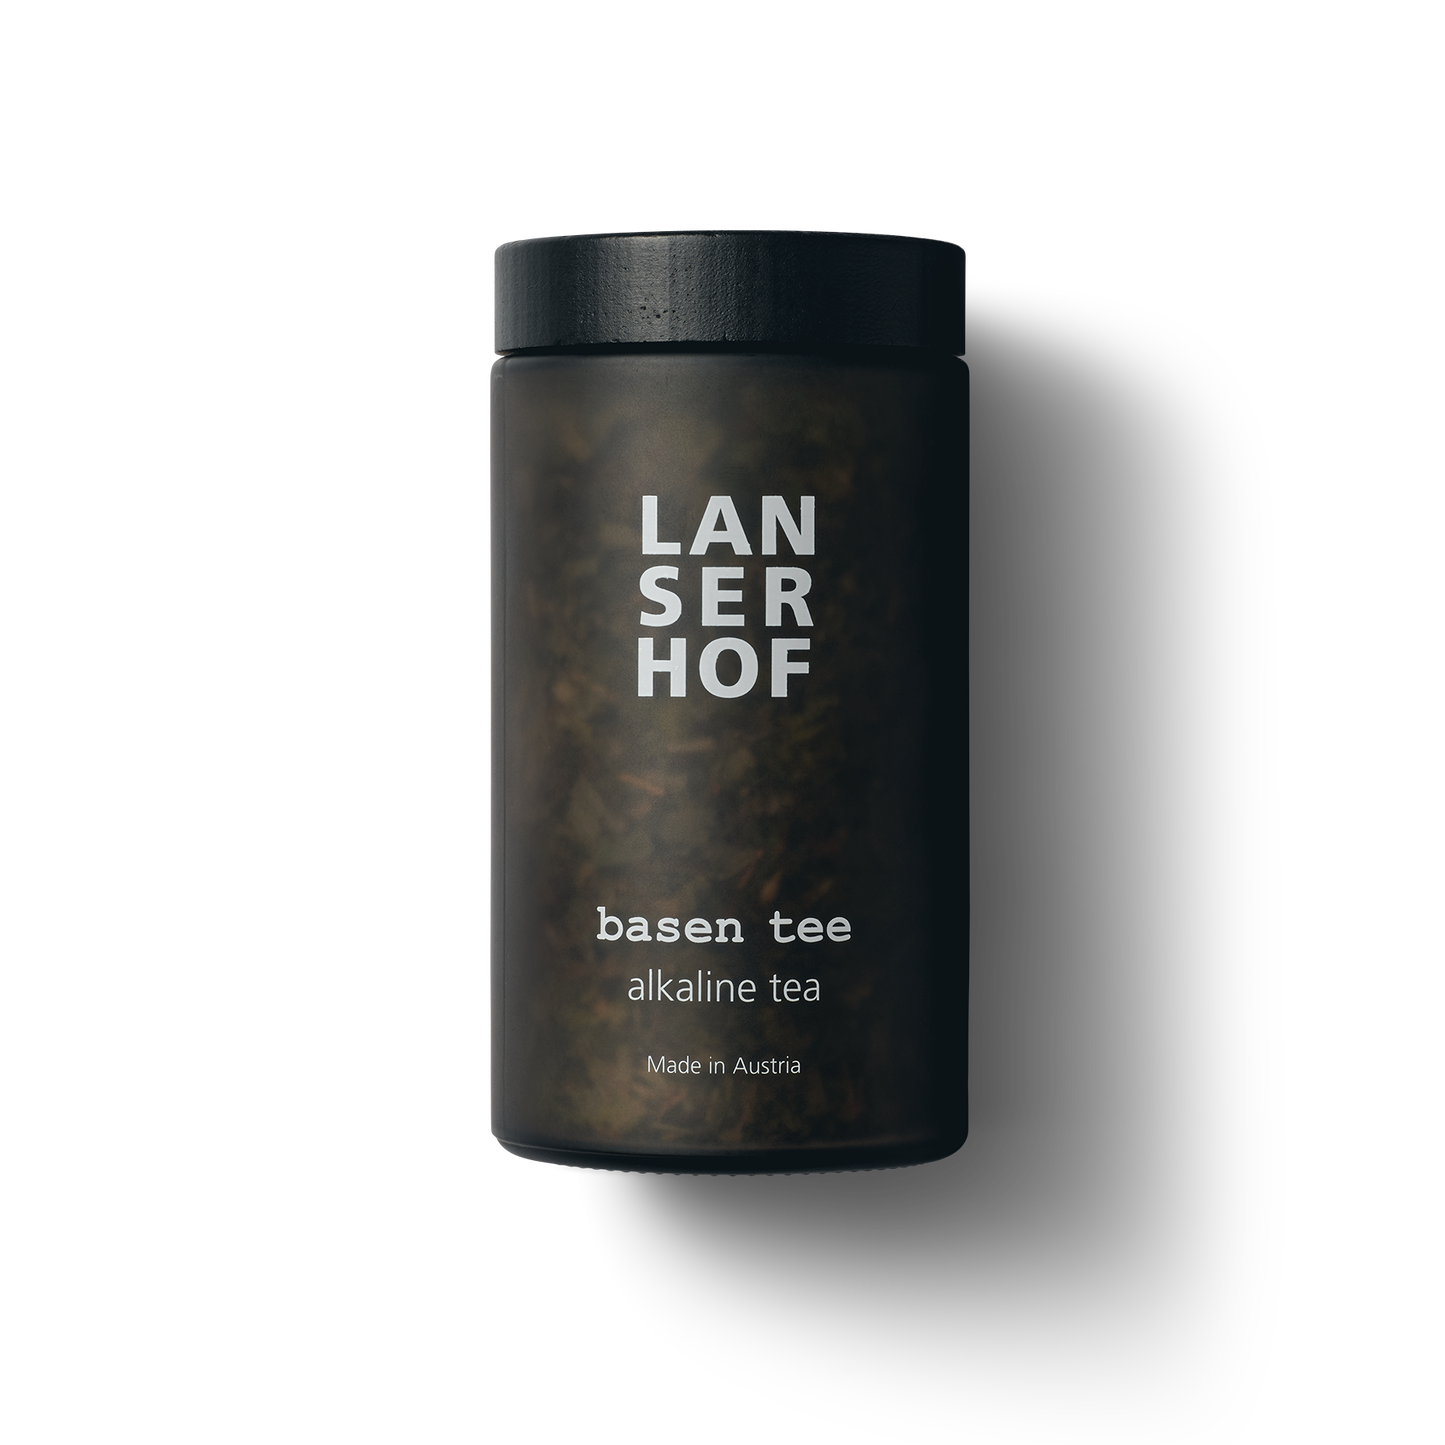 Lanserhof base tea in a glass